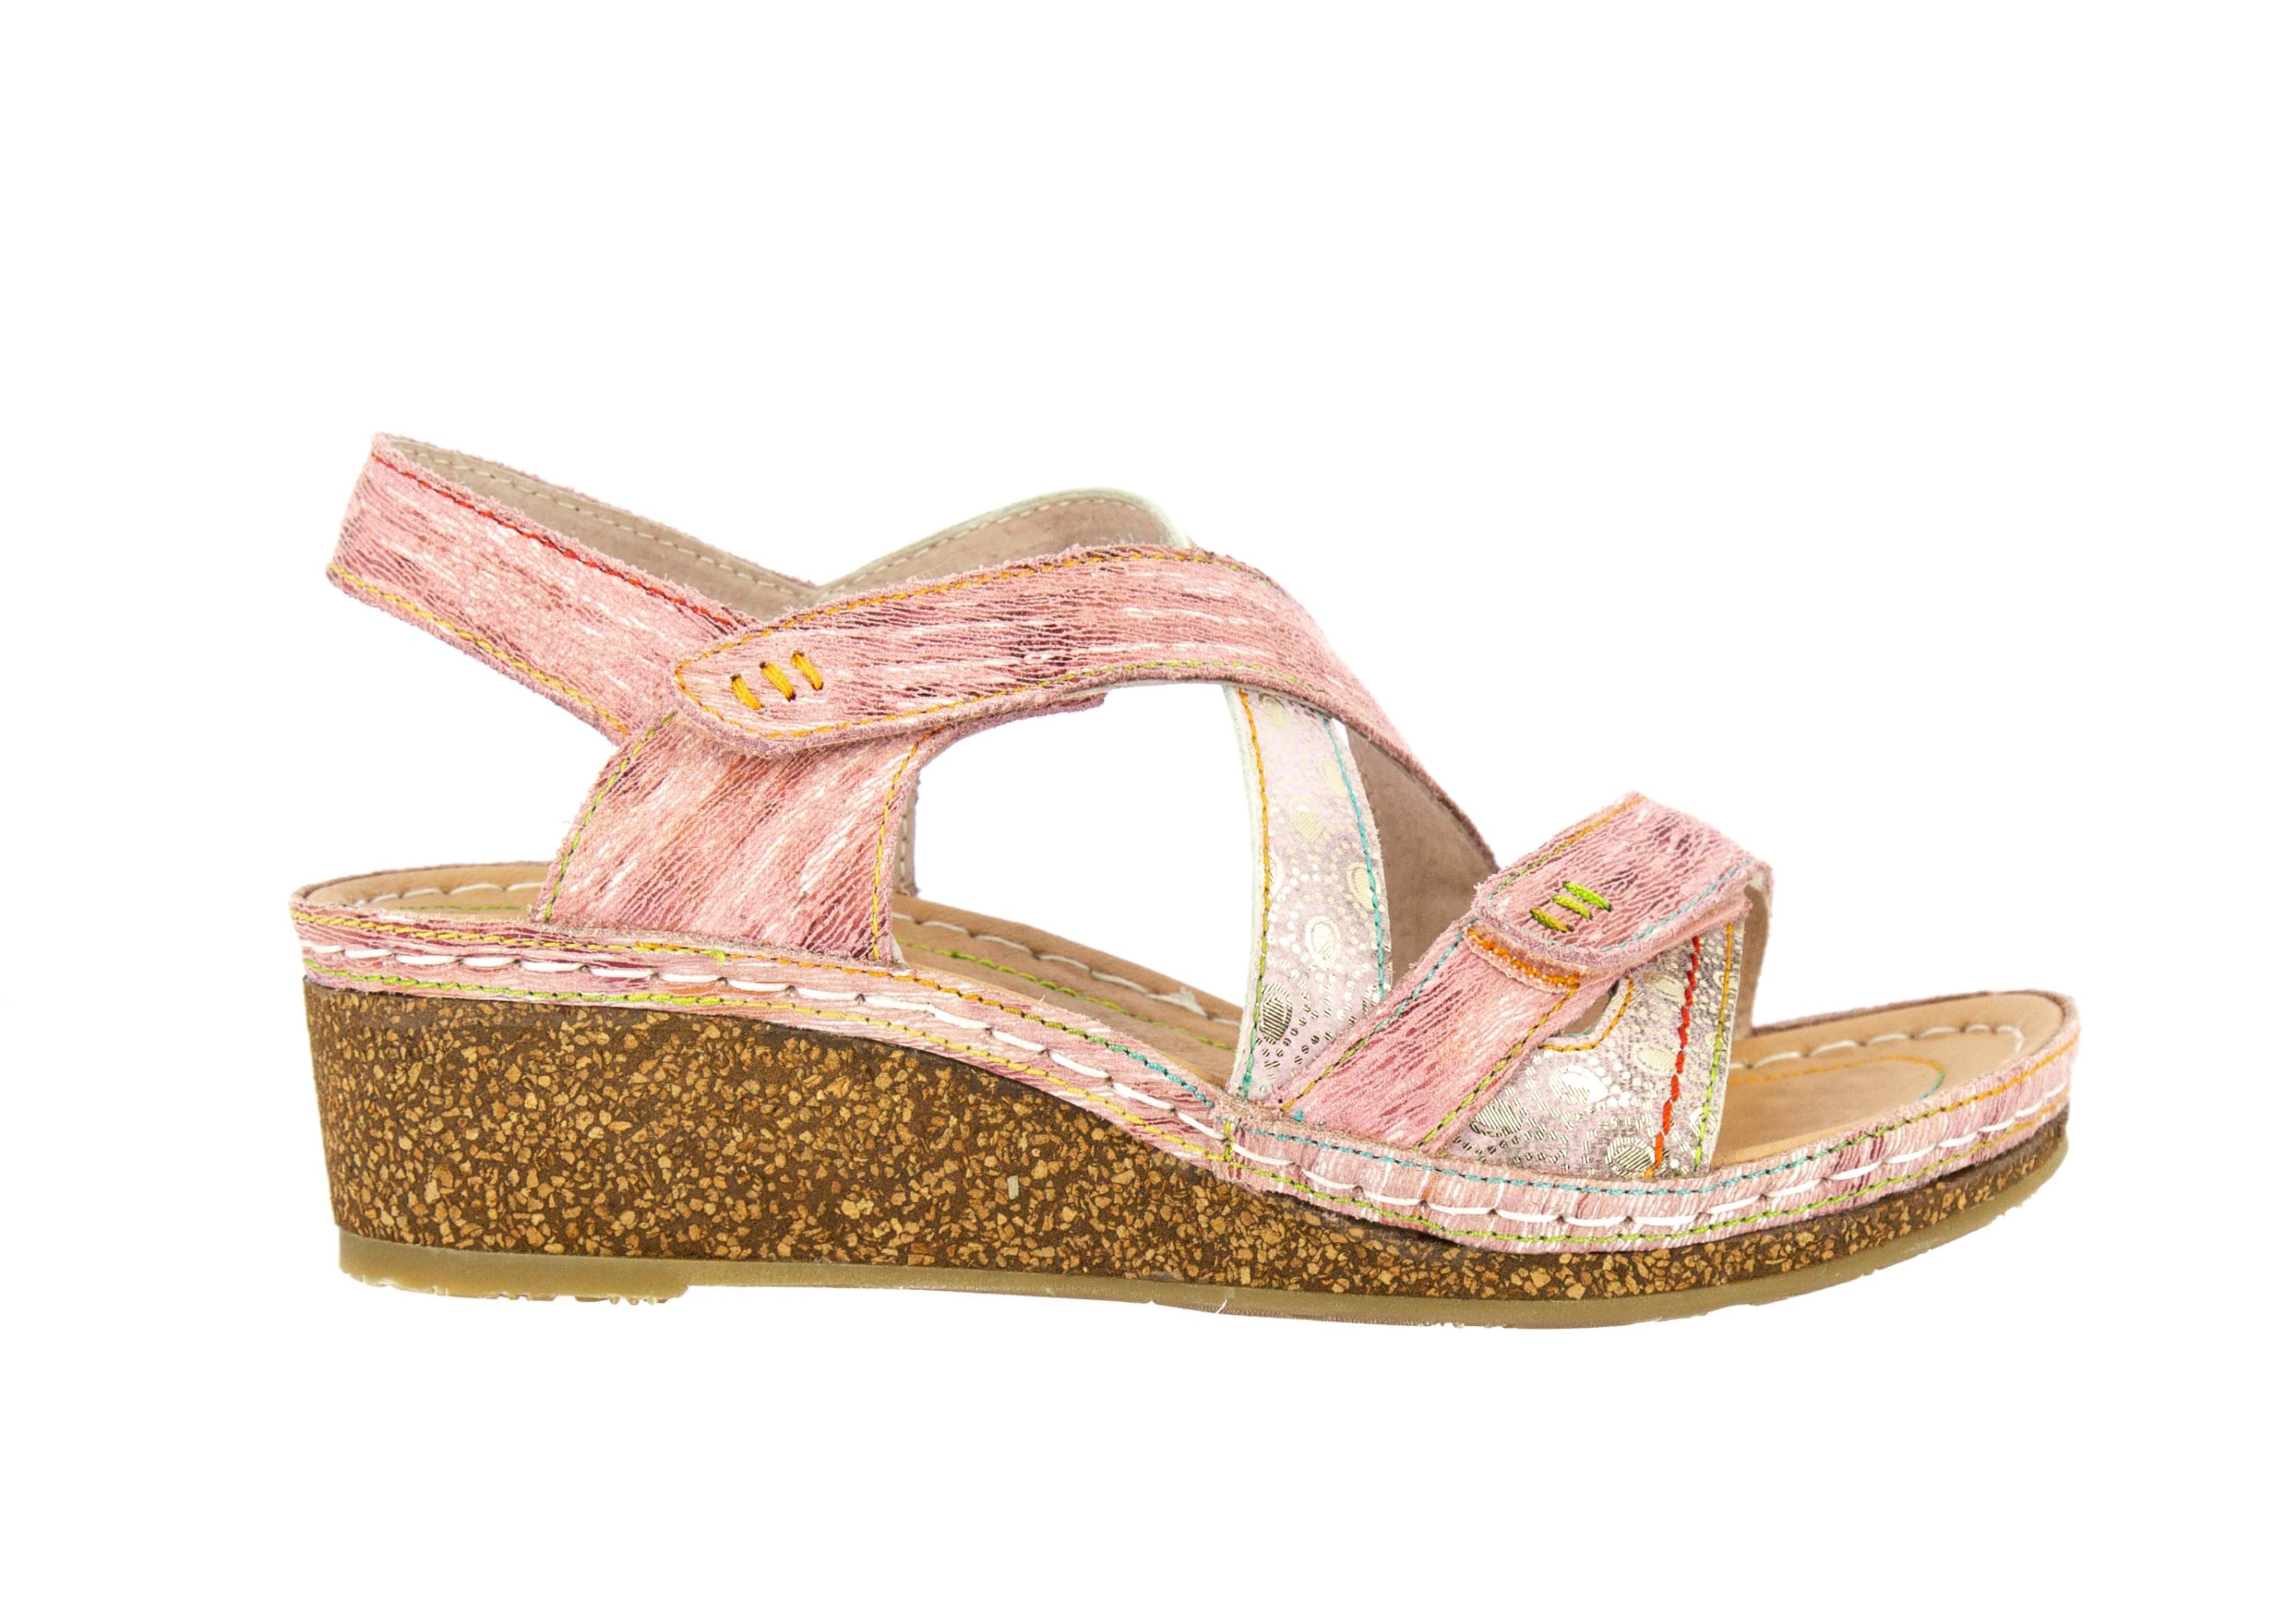 Shoe FACRAHO05 - 35 / PINK - Sandal